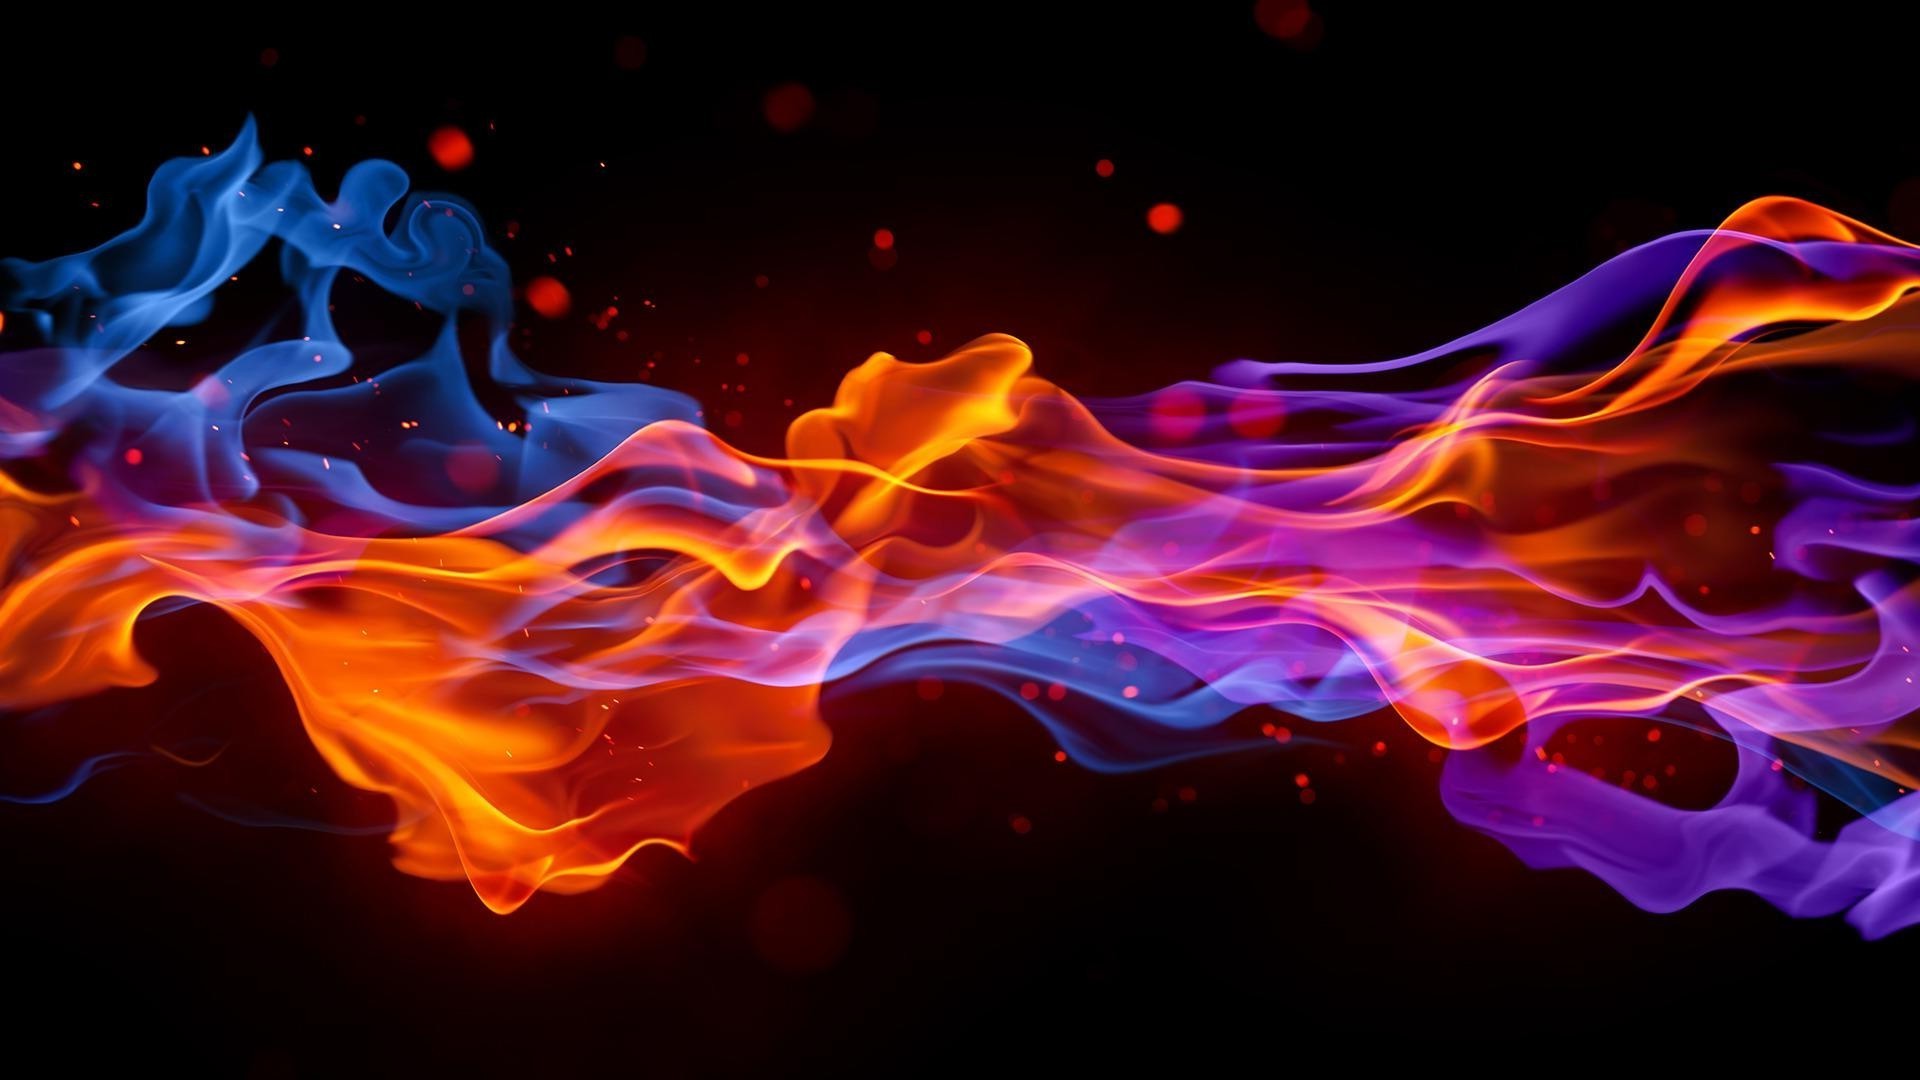 абстракция и графика пламя аннотация сожгли сжечь дым дизайн энергии движения тепло фон горячая обои магия динамические легковоспламеняющиеся поток волна шаблон опасность костер